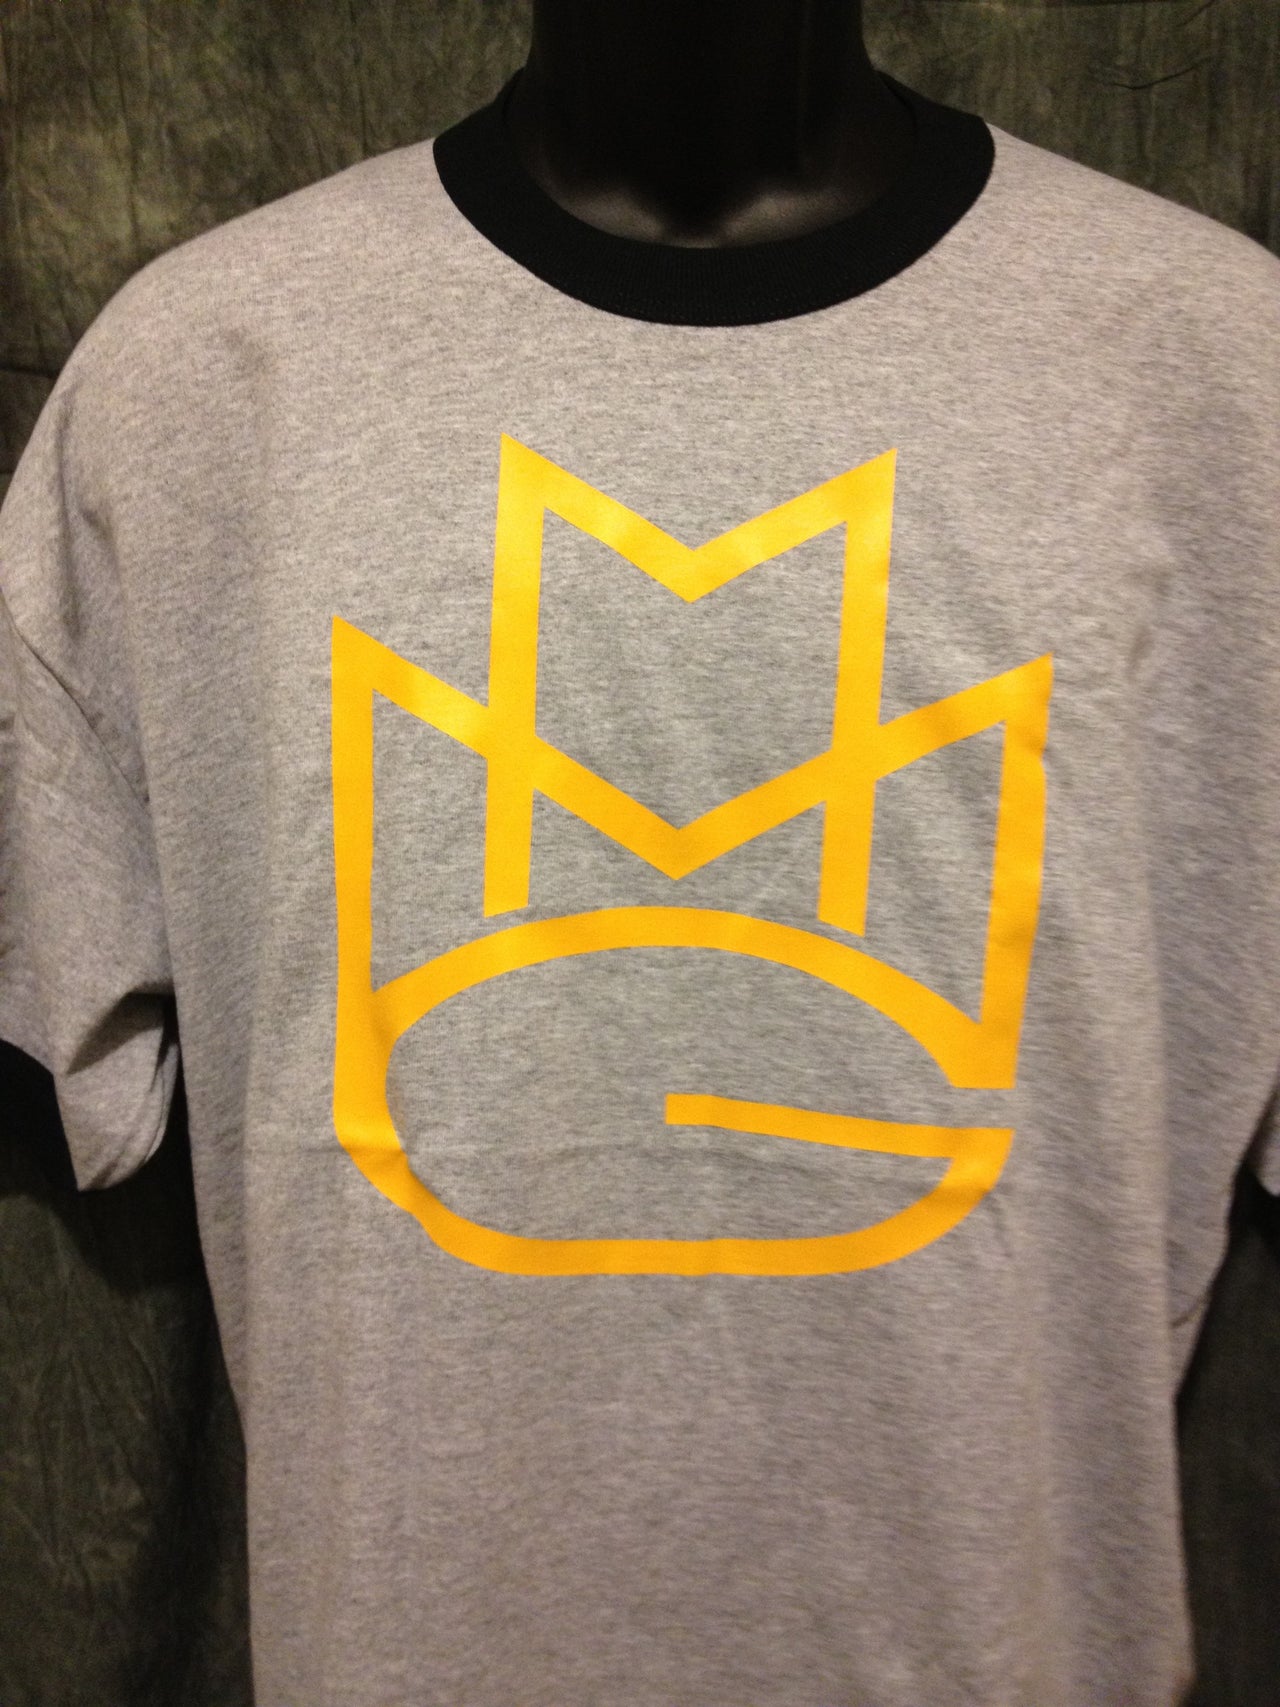 Maybach Music Group MMG Tshirt: Yellow Print on Grey & Black Ringer TShirt - TshirtNow.net - 2